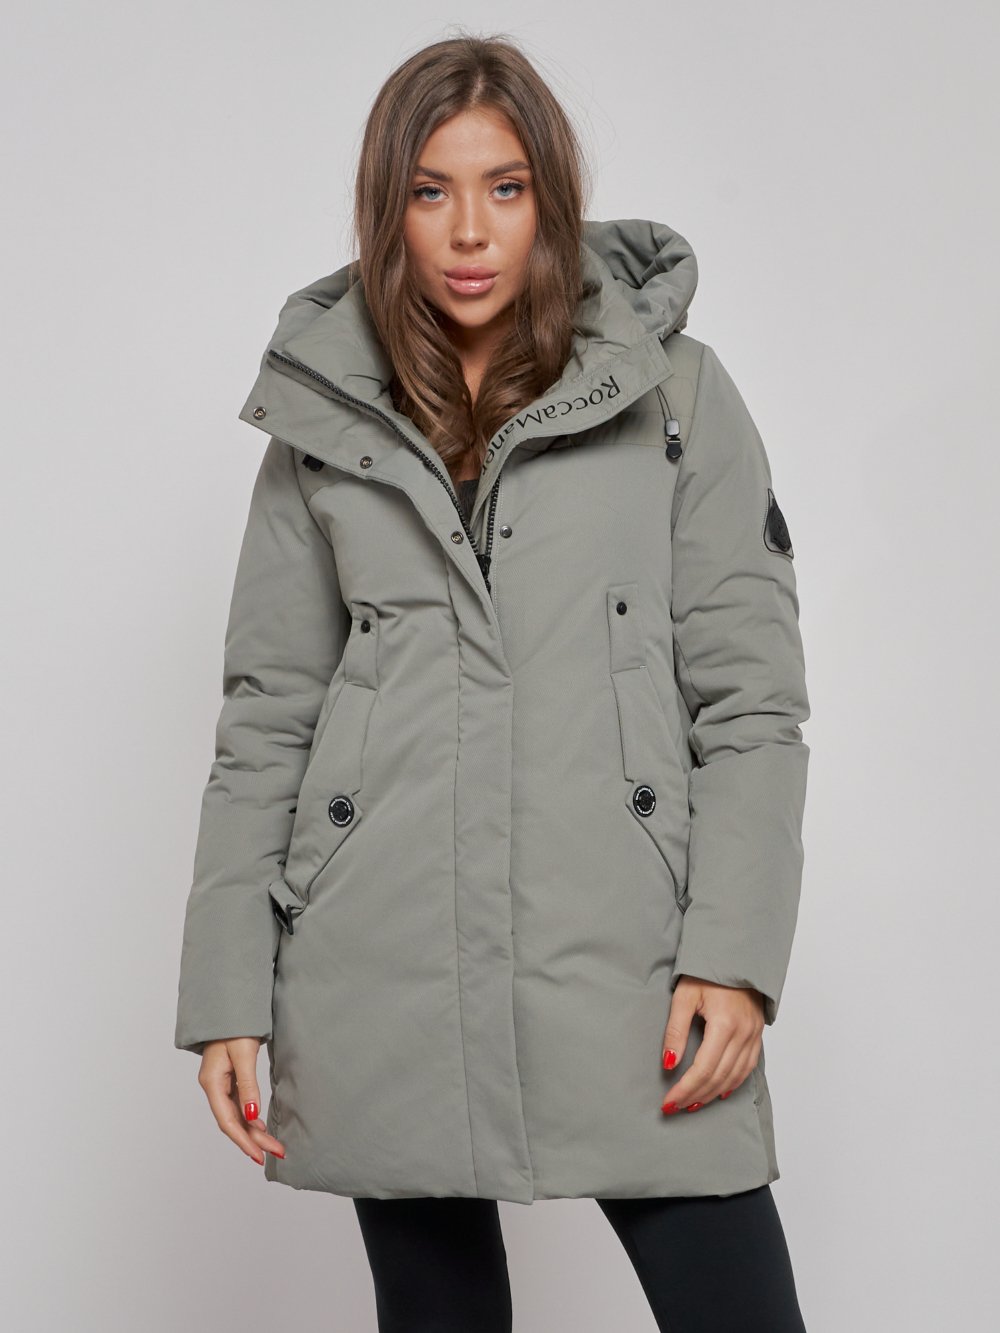 Купить куртку женскую оптом от производителя недорого в Москве 589003Kh 1